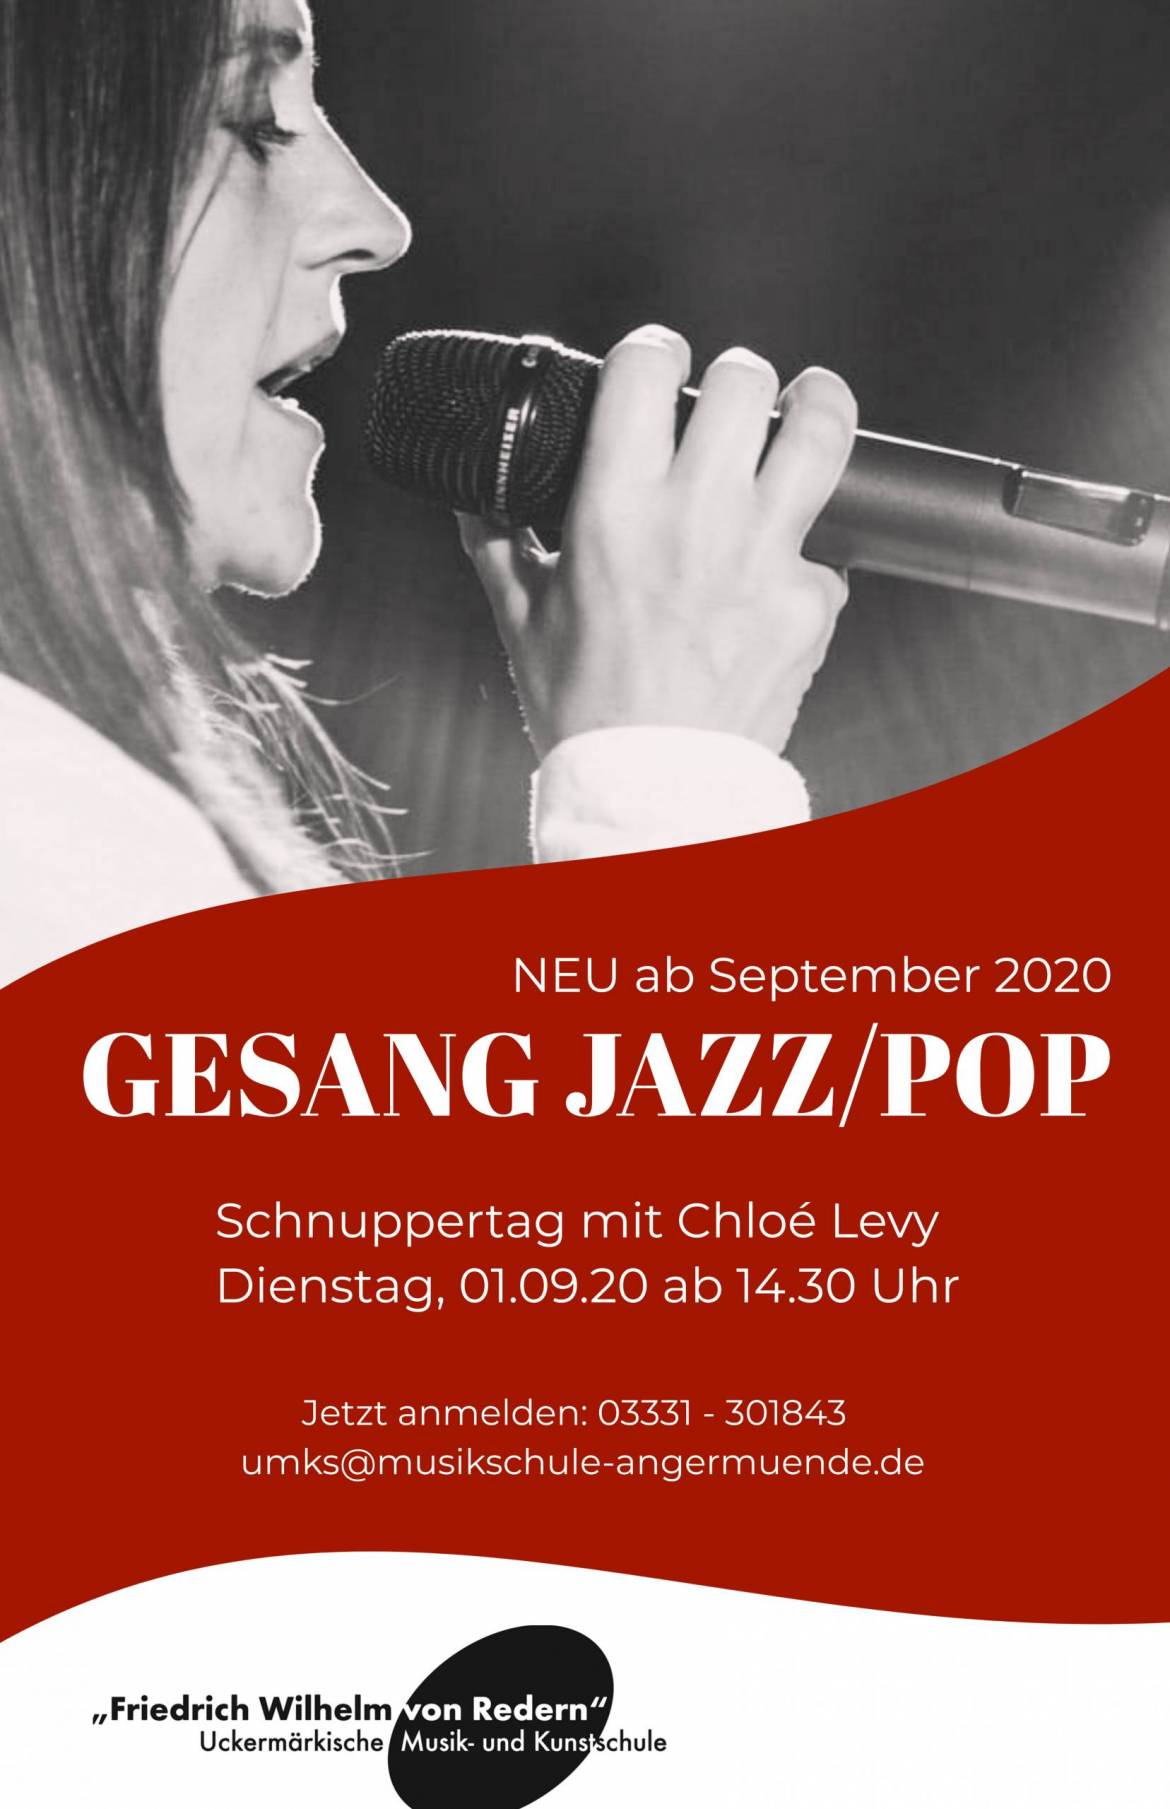 NEU: Gesang Jazz/Pop